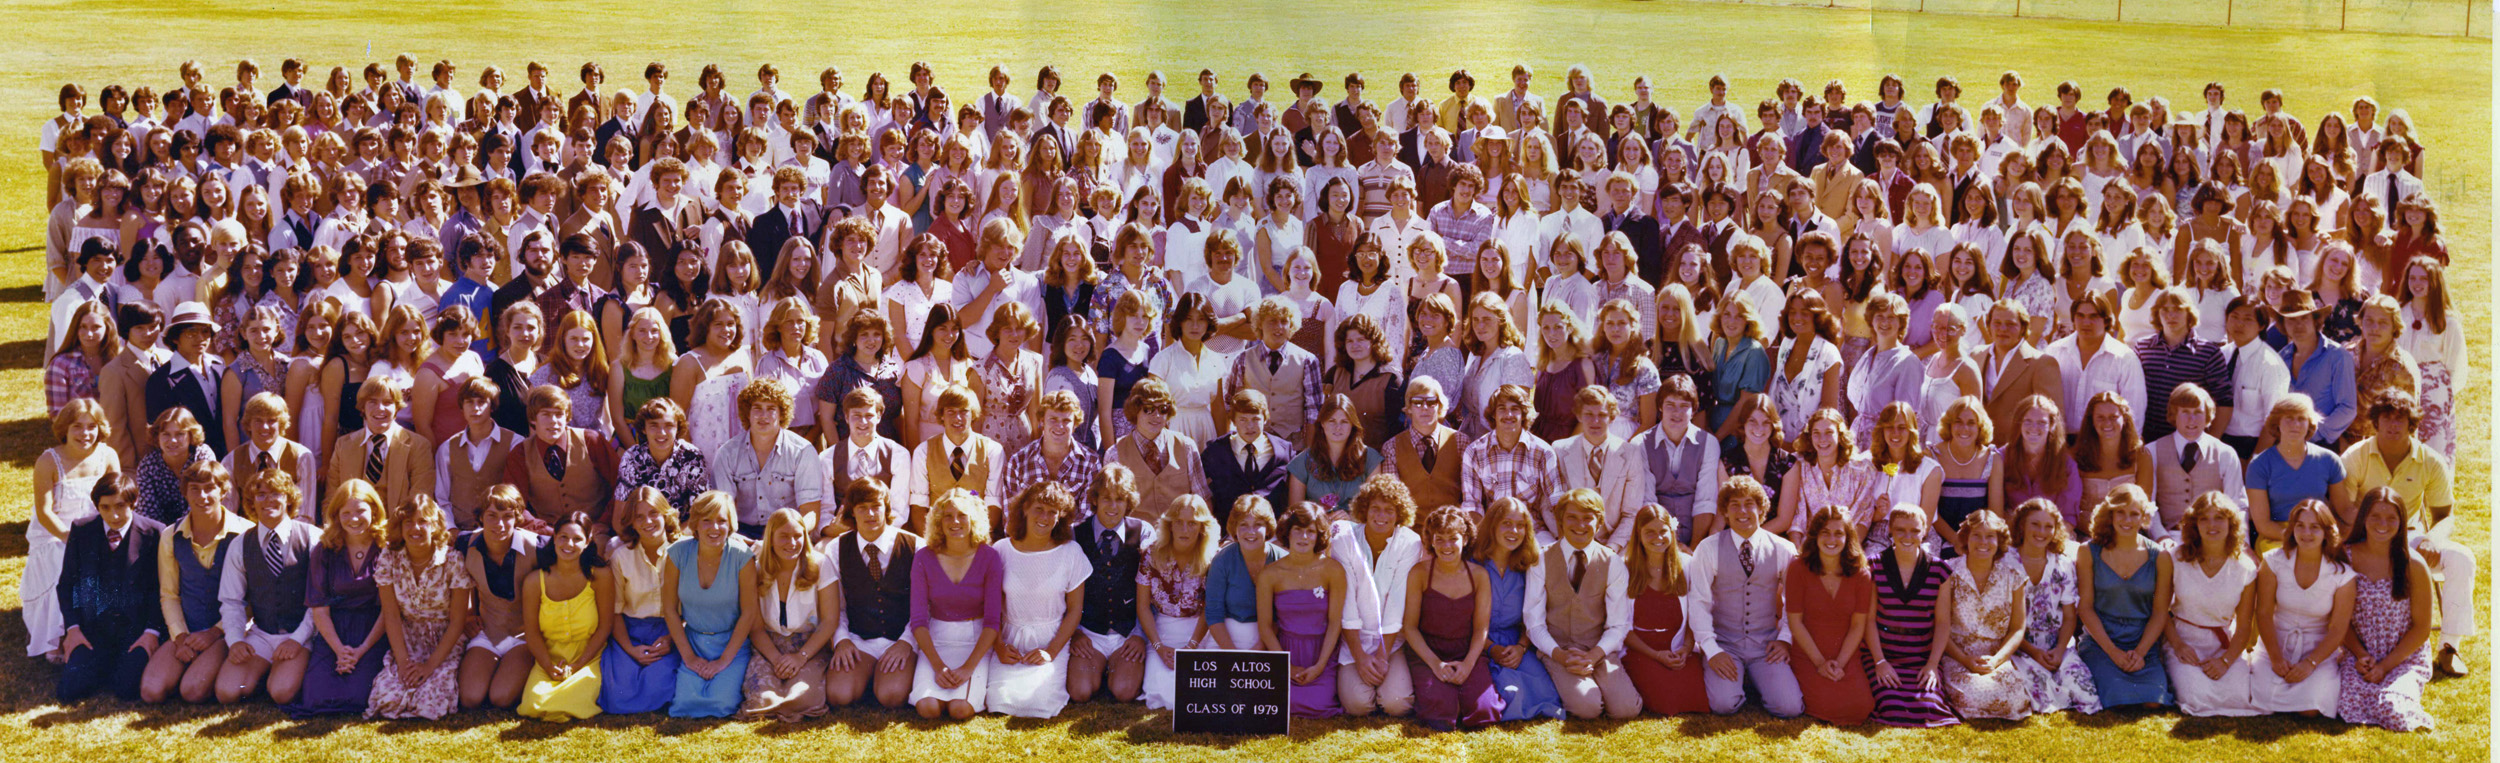 Los Altos Class of 1979
(click to enlarge)